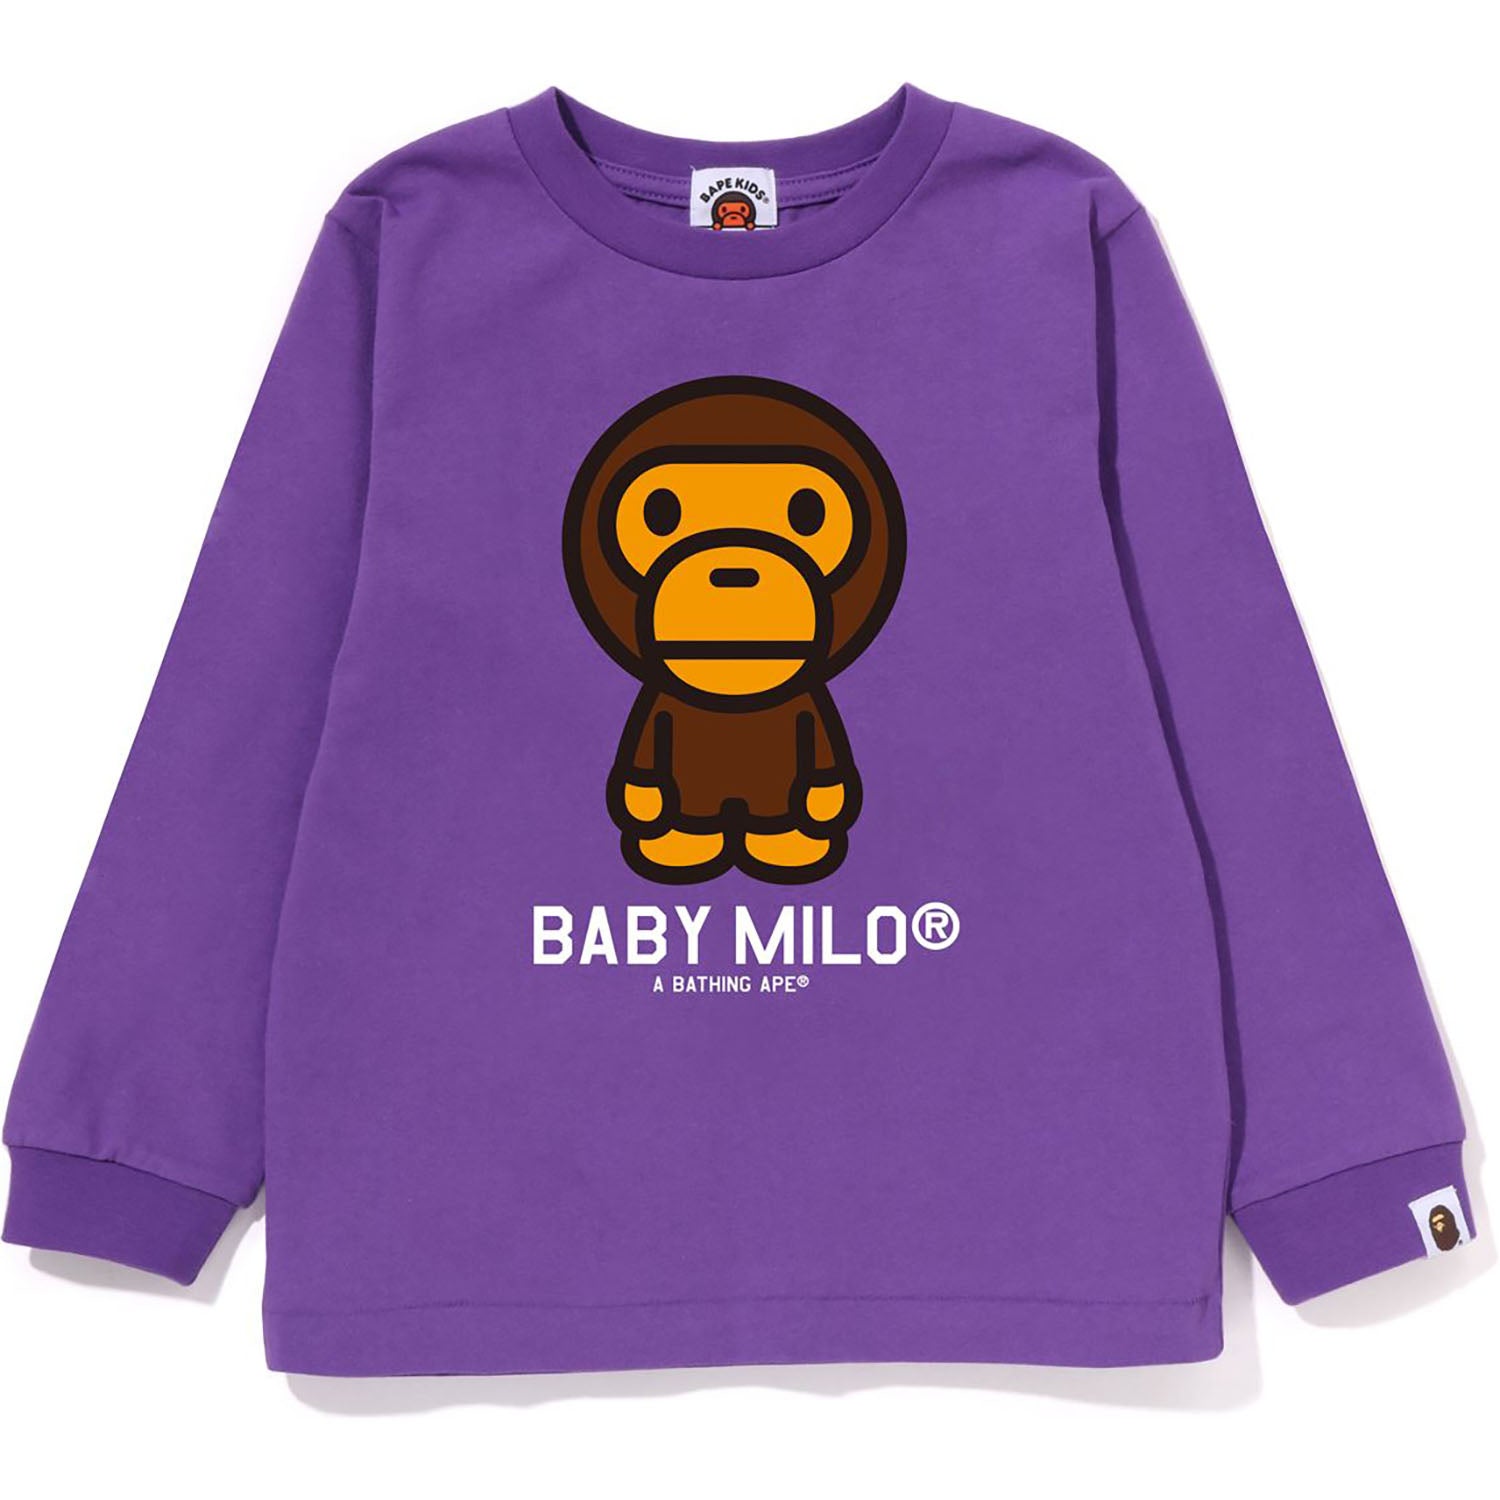 BABY MILO L/S TEE KIDS – us.bape.com